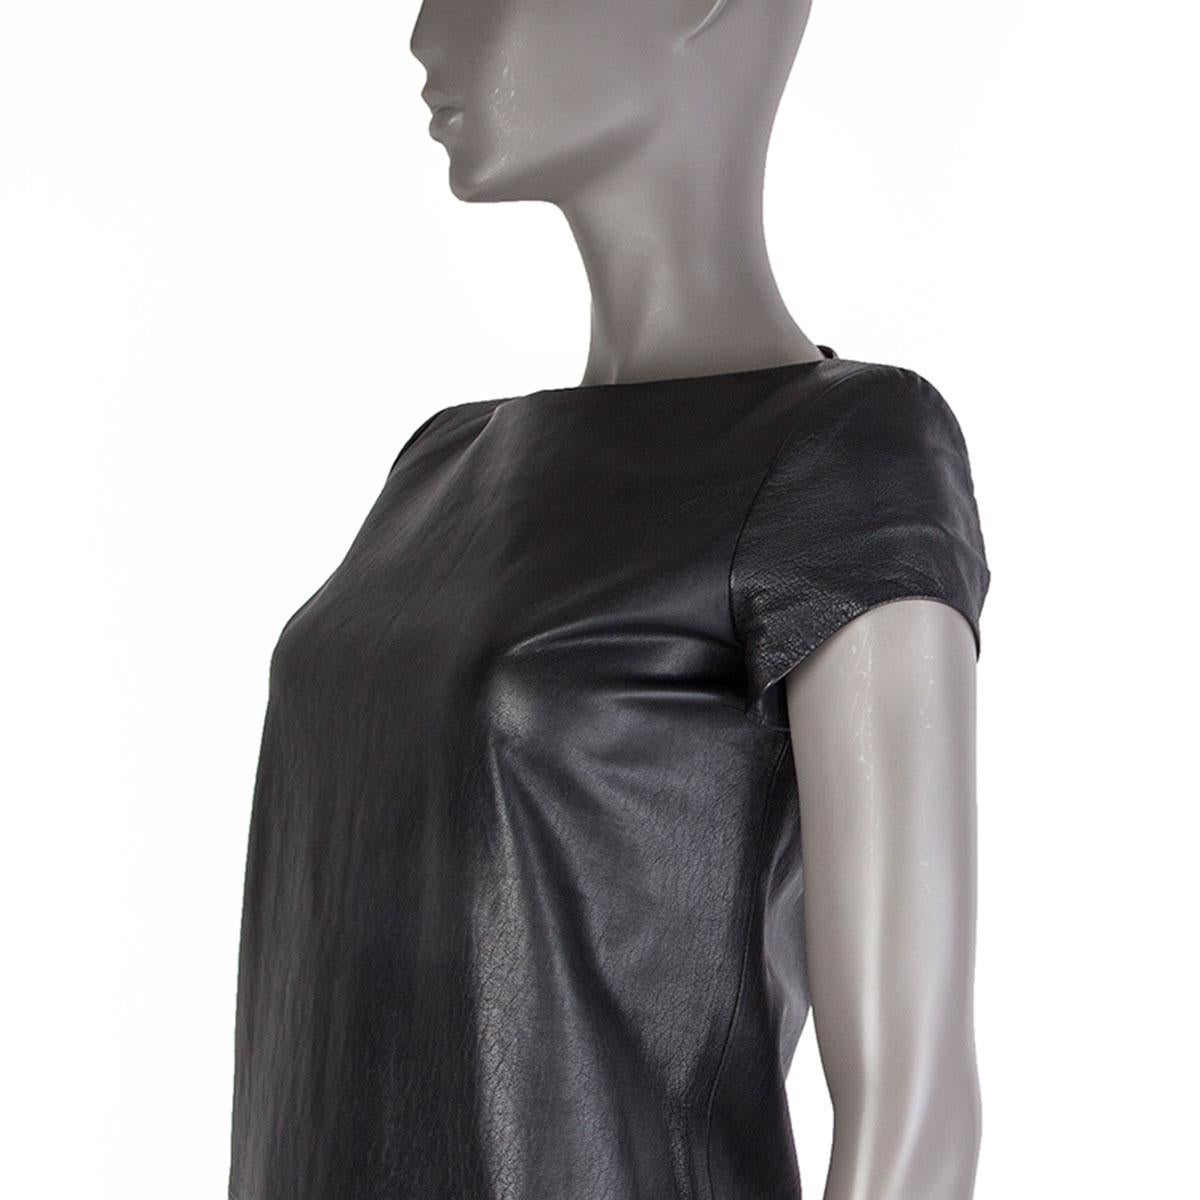 100% authentisches Saint Laurent kurzärmeliges Shit-Kleid aus schwarzem Leder. Wird auf der Rückseite mit einem Reißverschluss geöffnet. Gefüttert mit schwarzer Seide (100%). Wurde getragen und ist in ausgezeichnetem Zustand.

Tag Größe	Fehlende